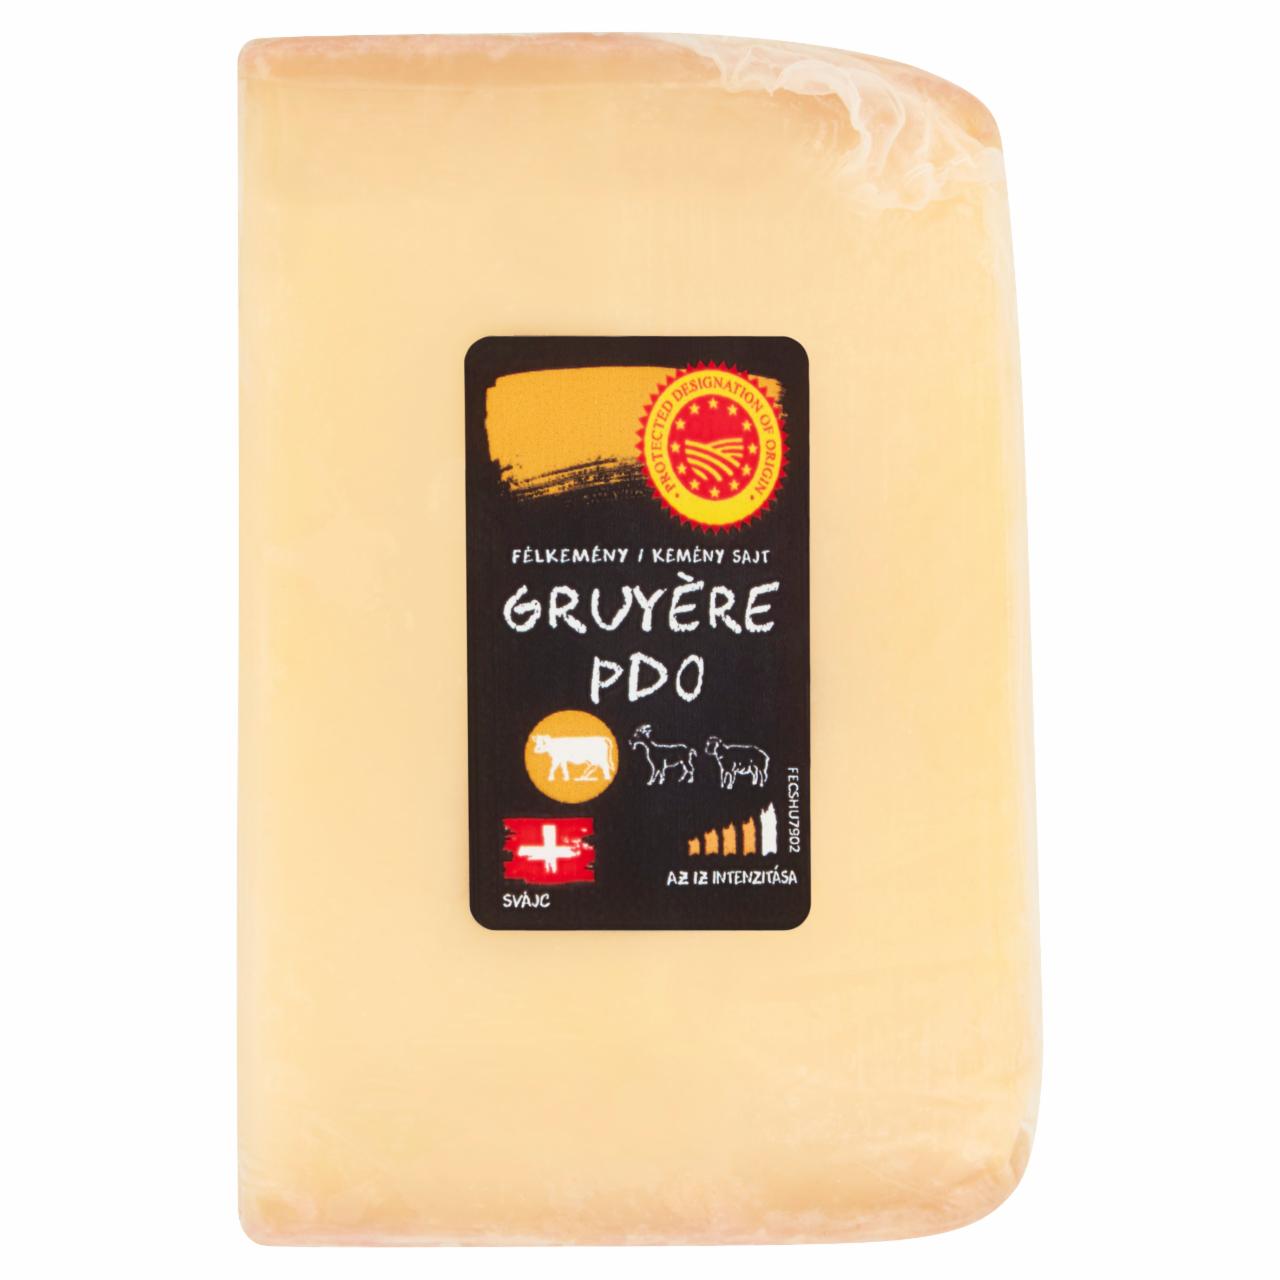 Képek - Gruyère félkemény/kemény sajt